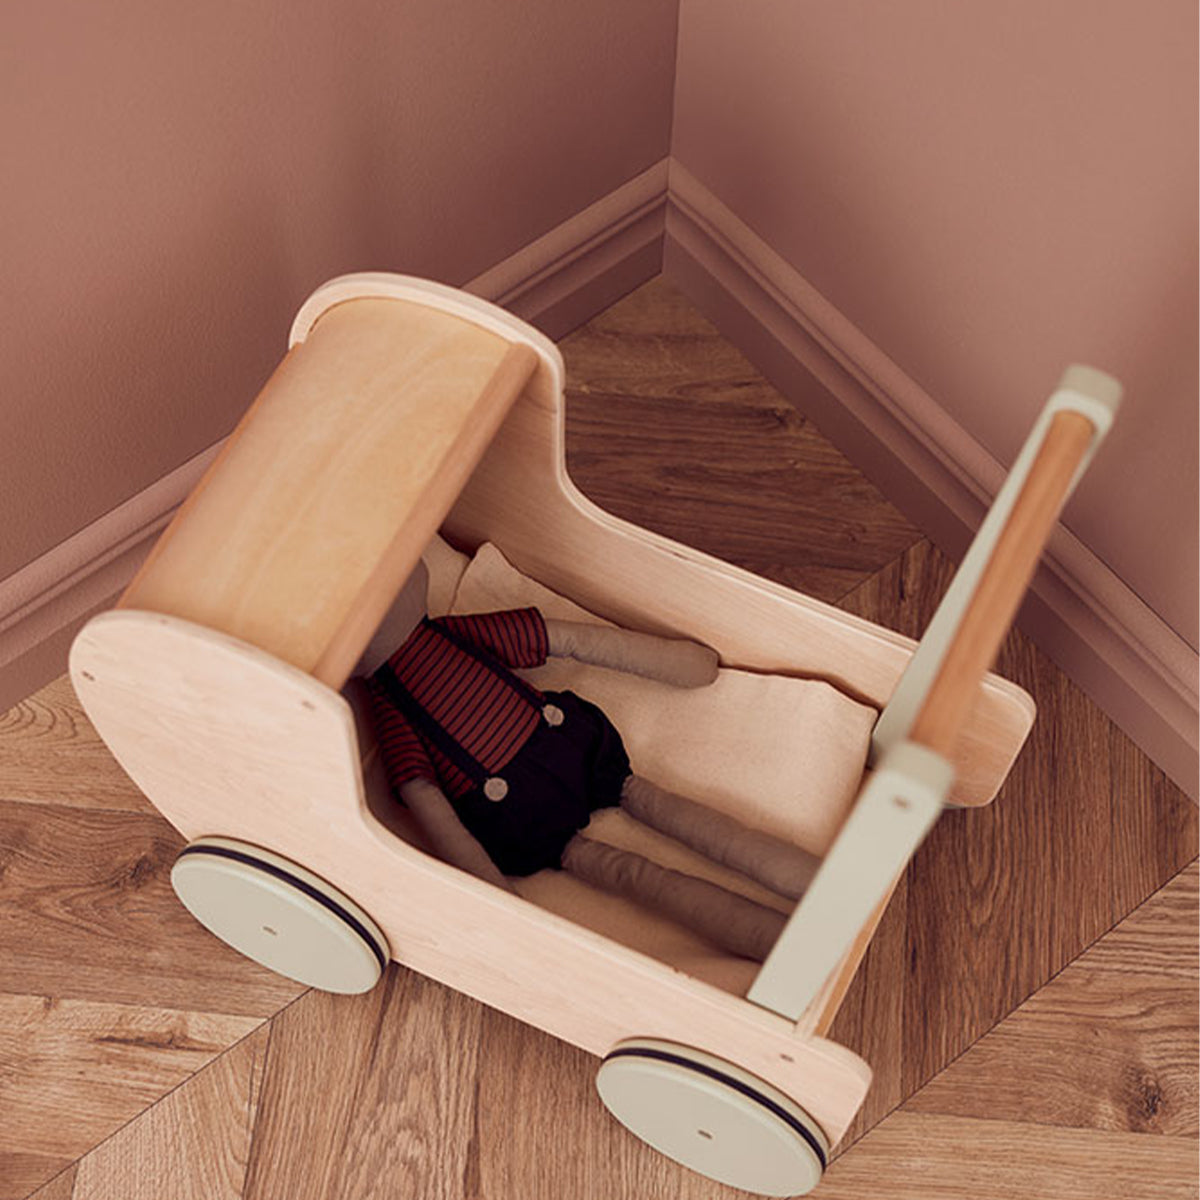 De Kid's Concept poppenwagen naturel is perfect voor alle kinderen die dol zijn op vadertje en moedertje spelen. Met dit leuke wagentje wat ook als loopwagen kan dienen kan jouw kindje heerlijk een rondje wandelen met de pop. VanZus.